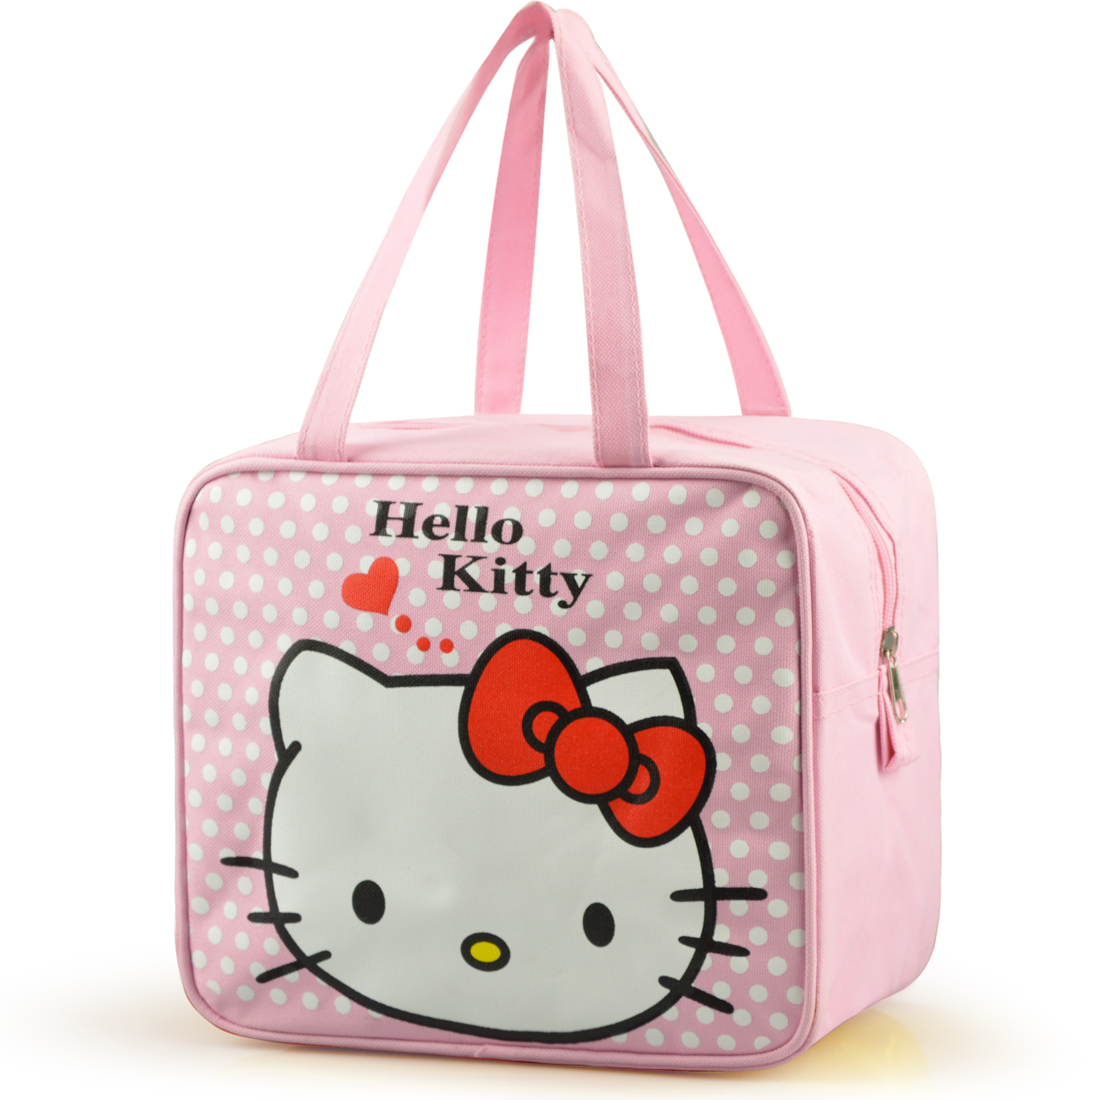 Сумка хеллоу. Сумка детская Kittie. Сумка Хеллоу Китти. Sanrio hello Kitty сумка. АЛИЭКСПРЕСС сумка Хеллоу Китти.